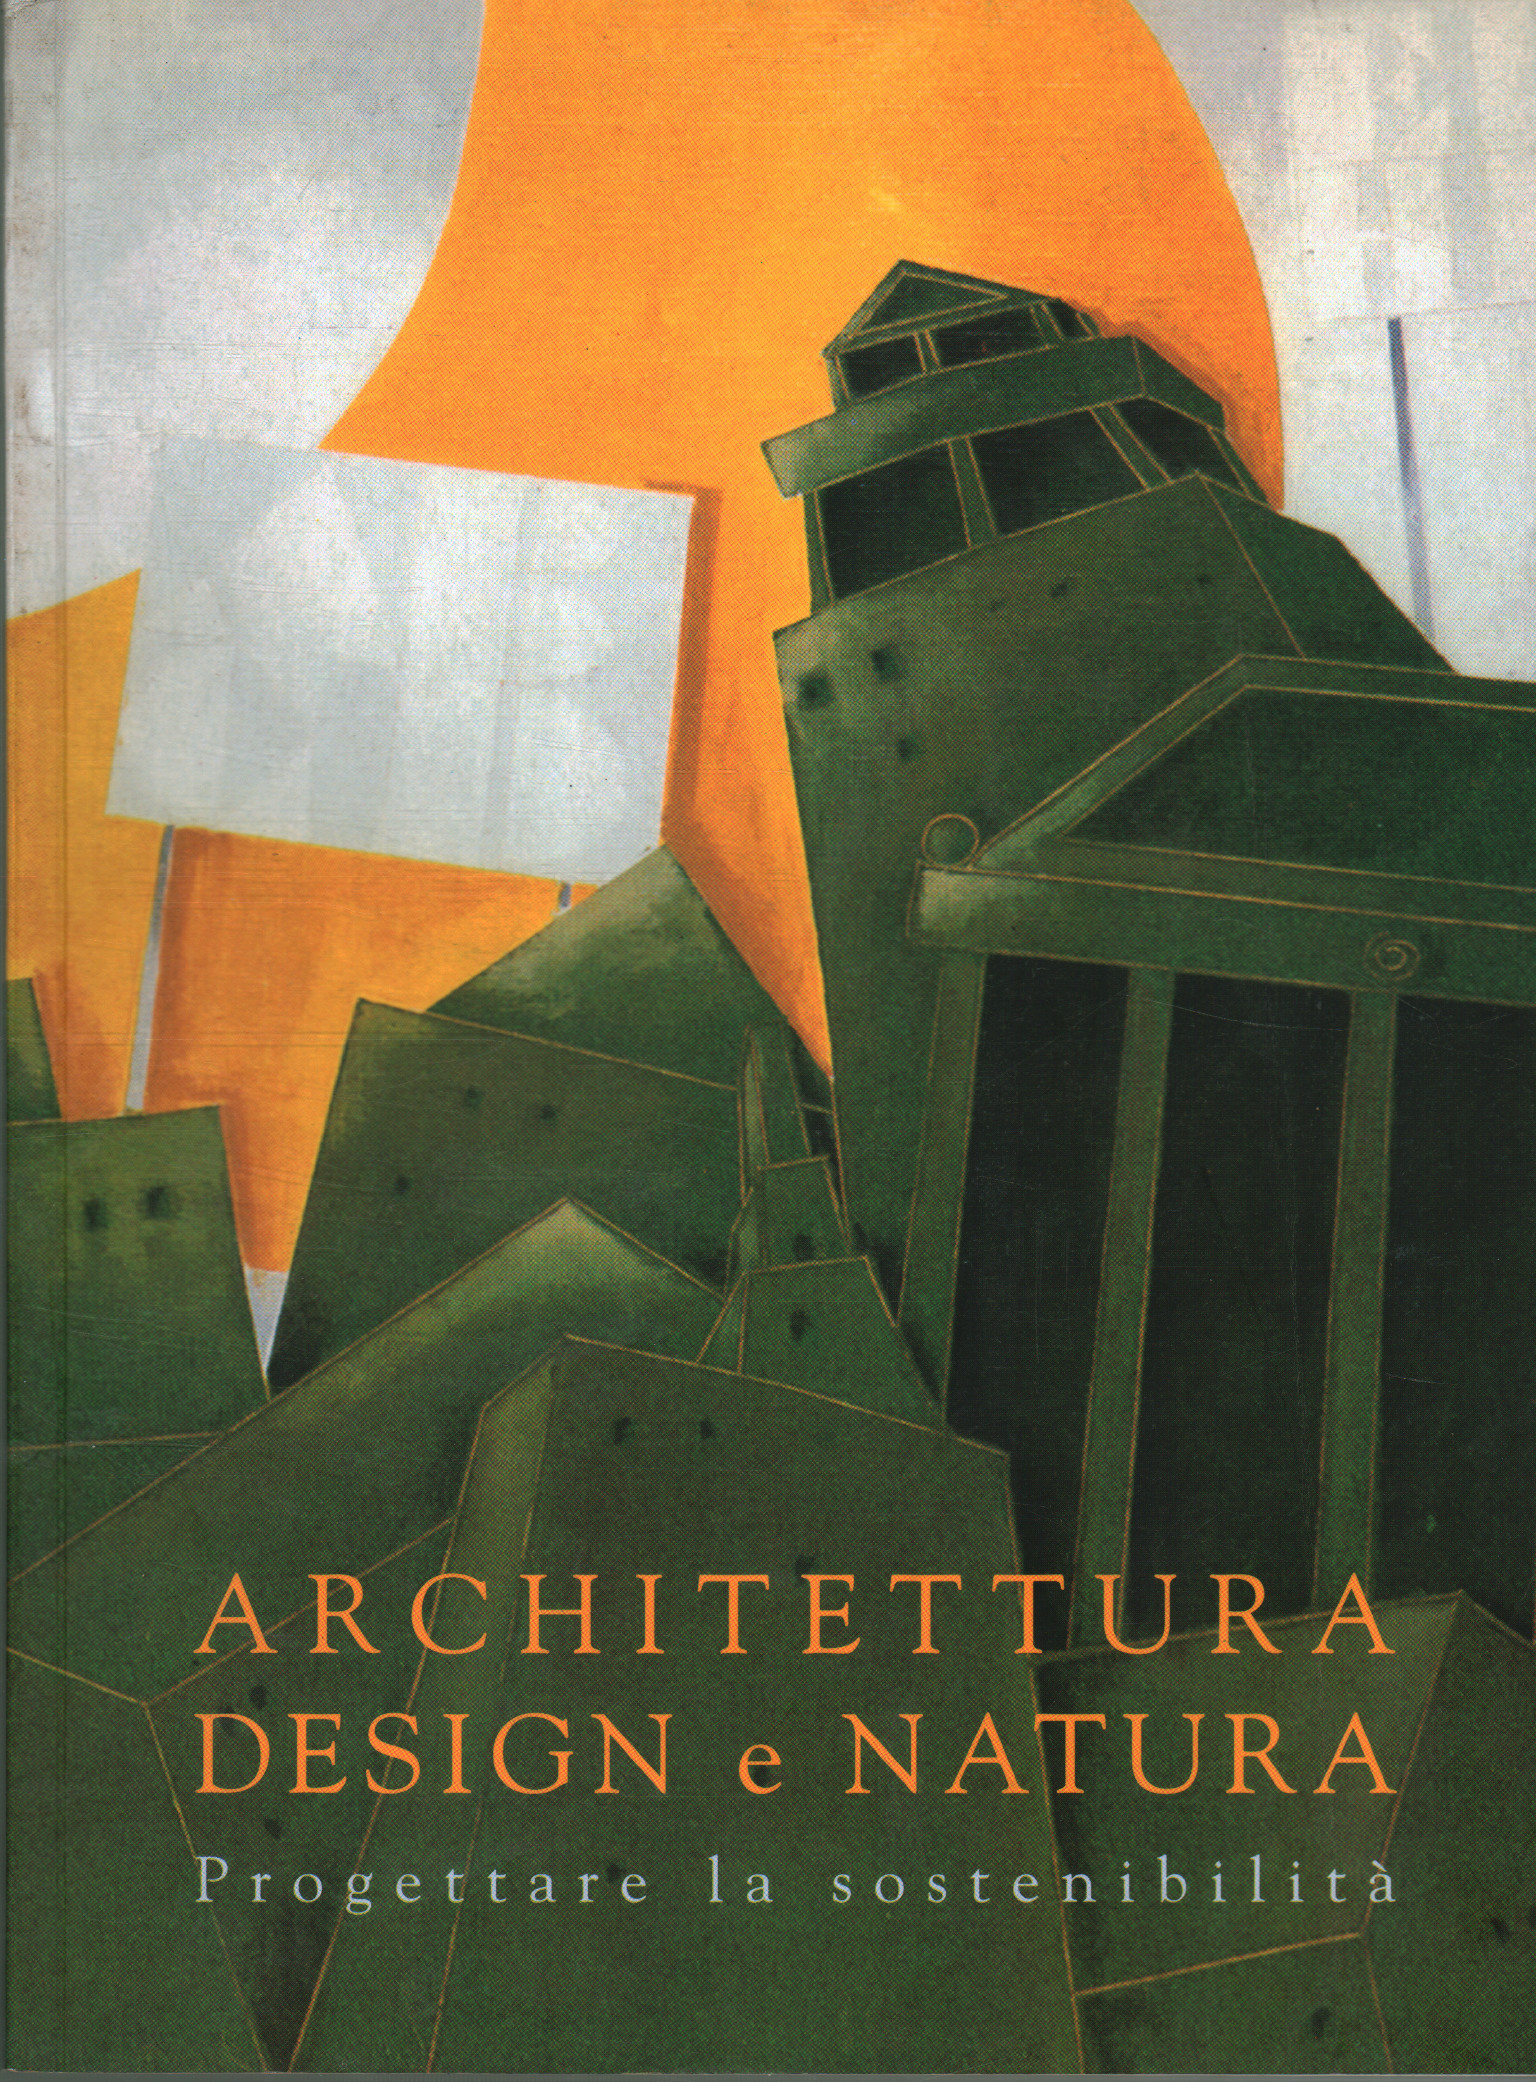 Architettura design e natura, Serena Omodeo Salè